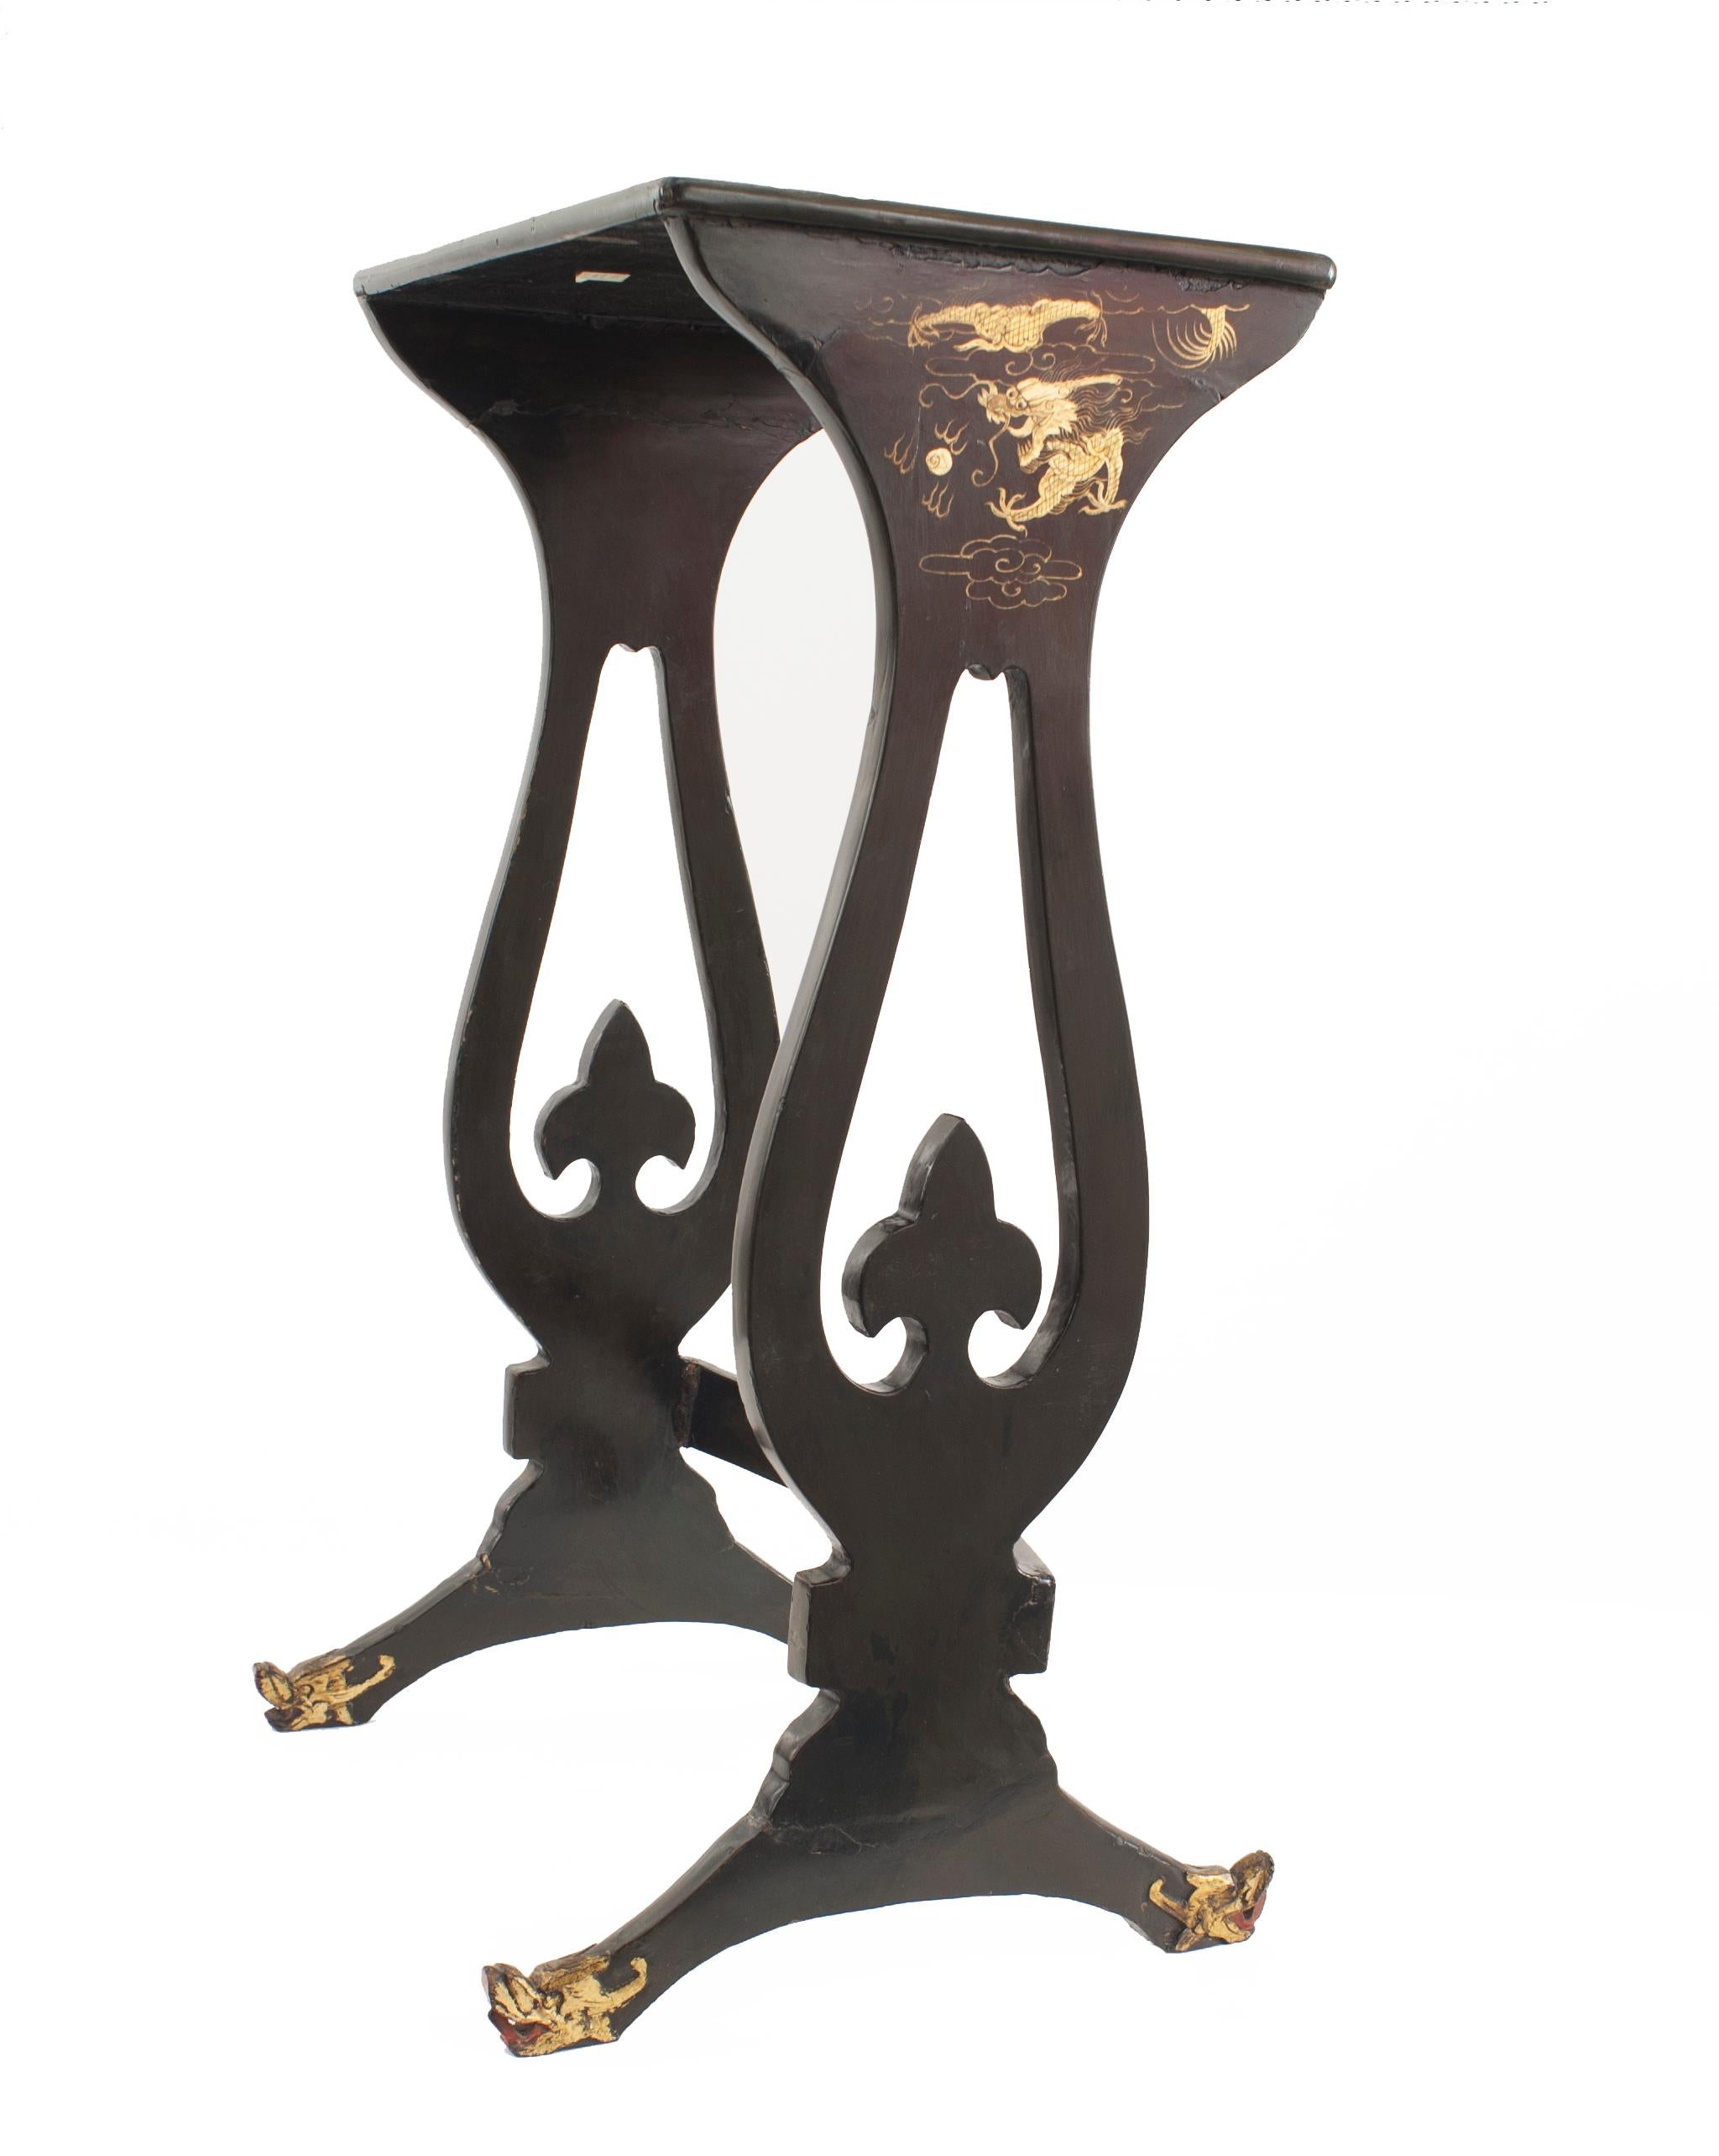 Englisch Regency-Stil (zweites Quartal des 19. Jahrhunderts) schwarz lackiert und Gold Chinoiserie dekoriert Nest von drei Tischen mit offenem Design Seitenbeine.
  